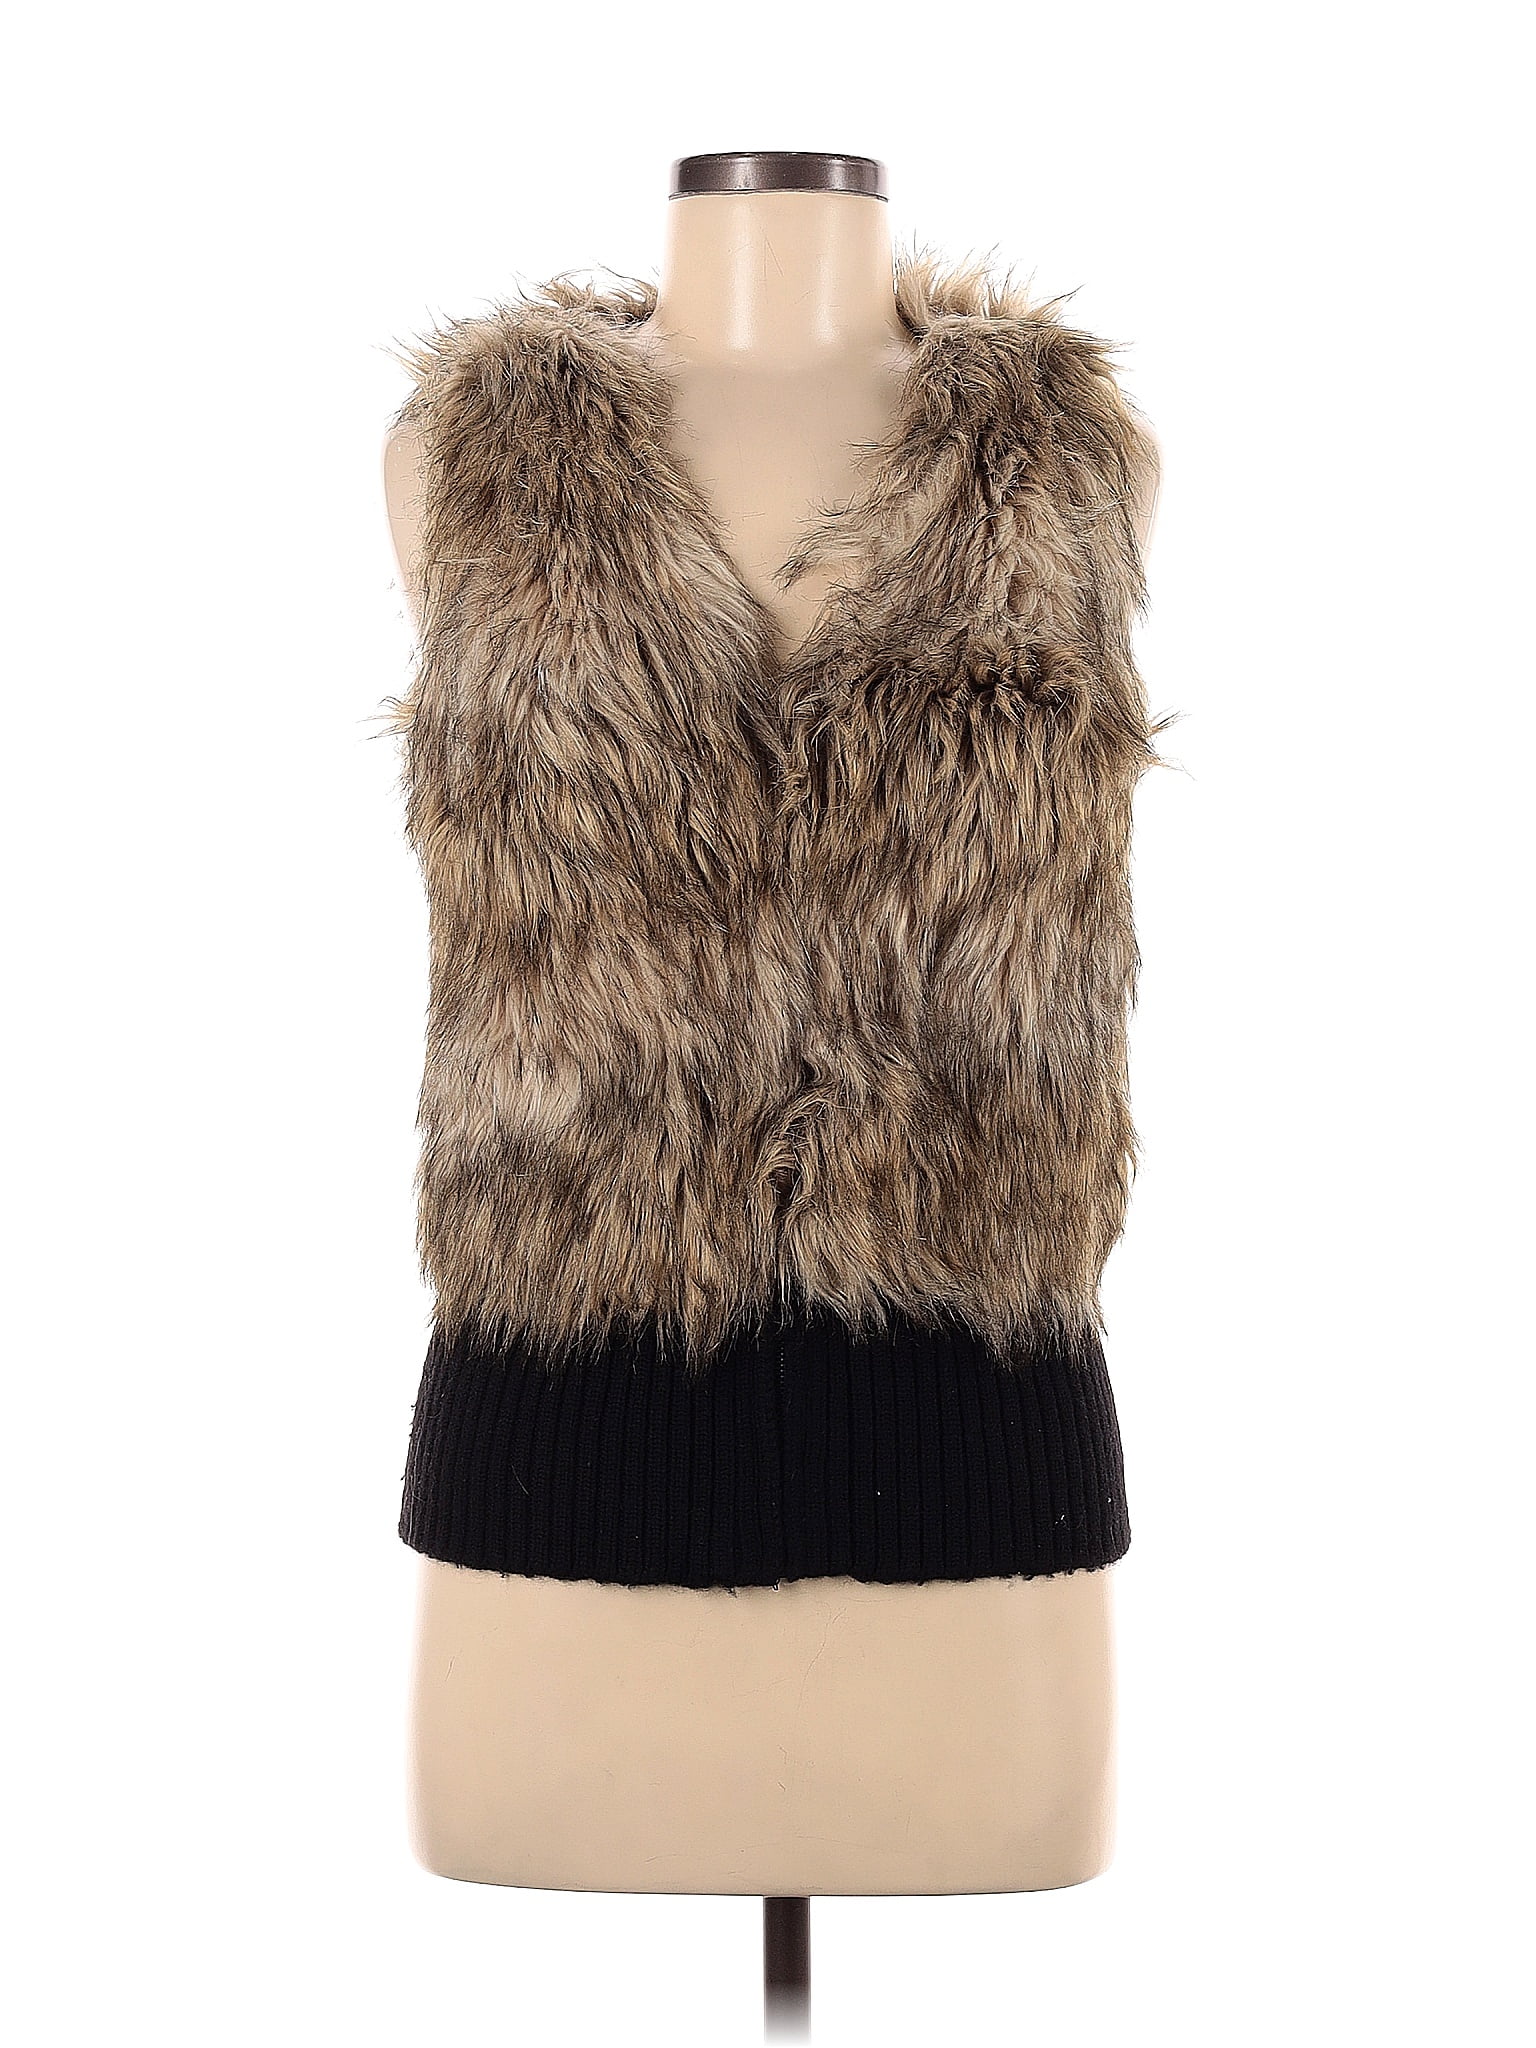 Juicy Couture 100% Acrylic Tan Brown Faux Fur Vest Size P - 77% off ...